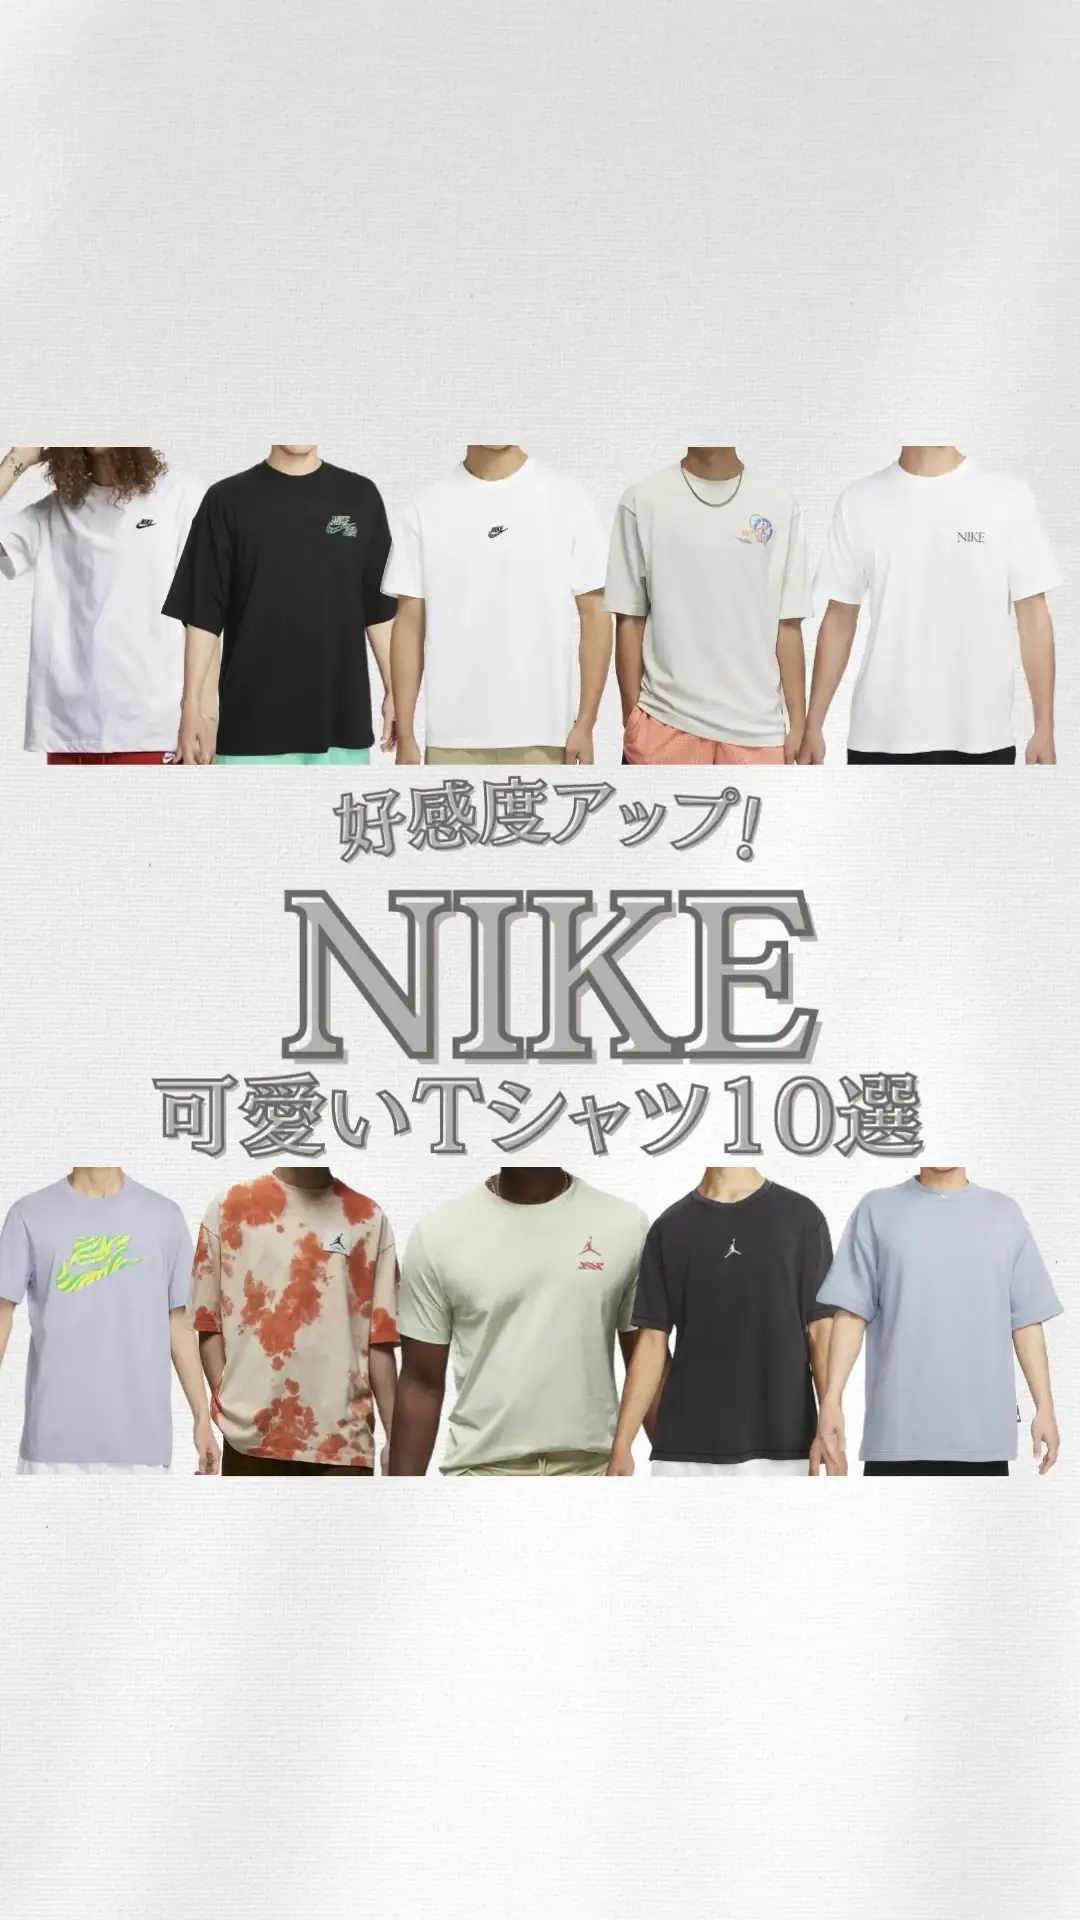 【NIKE】好感度アップ☺️可愛いtシャツ10選